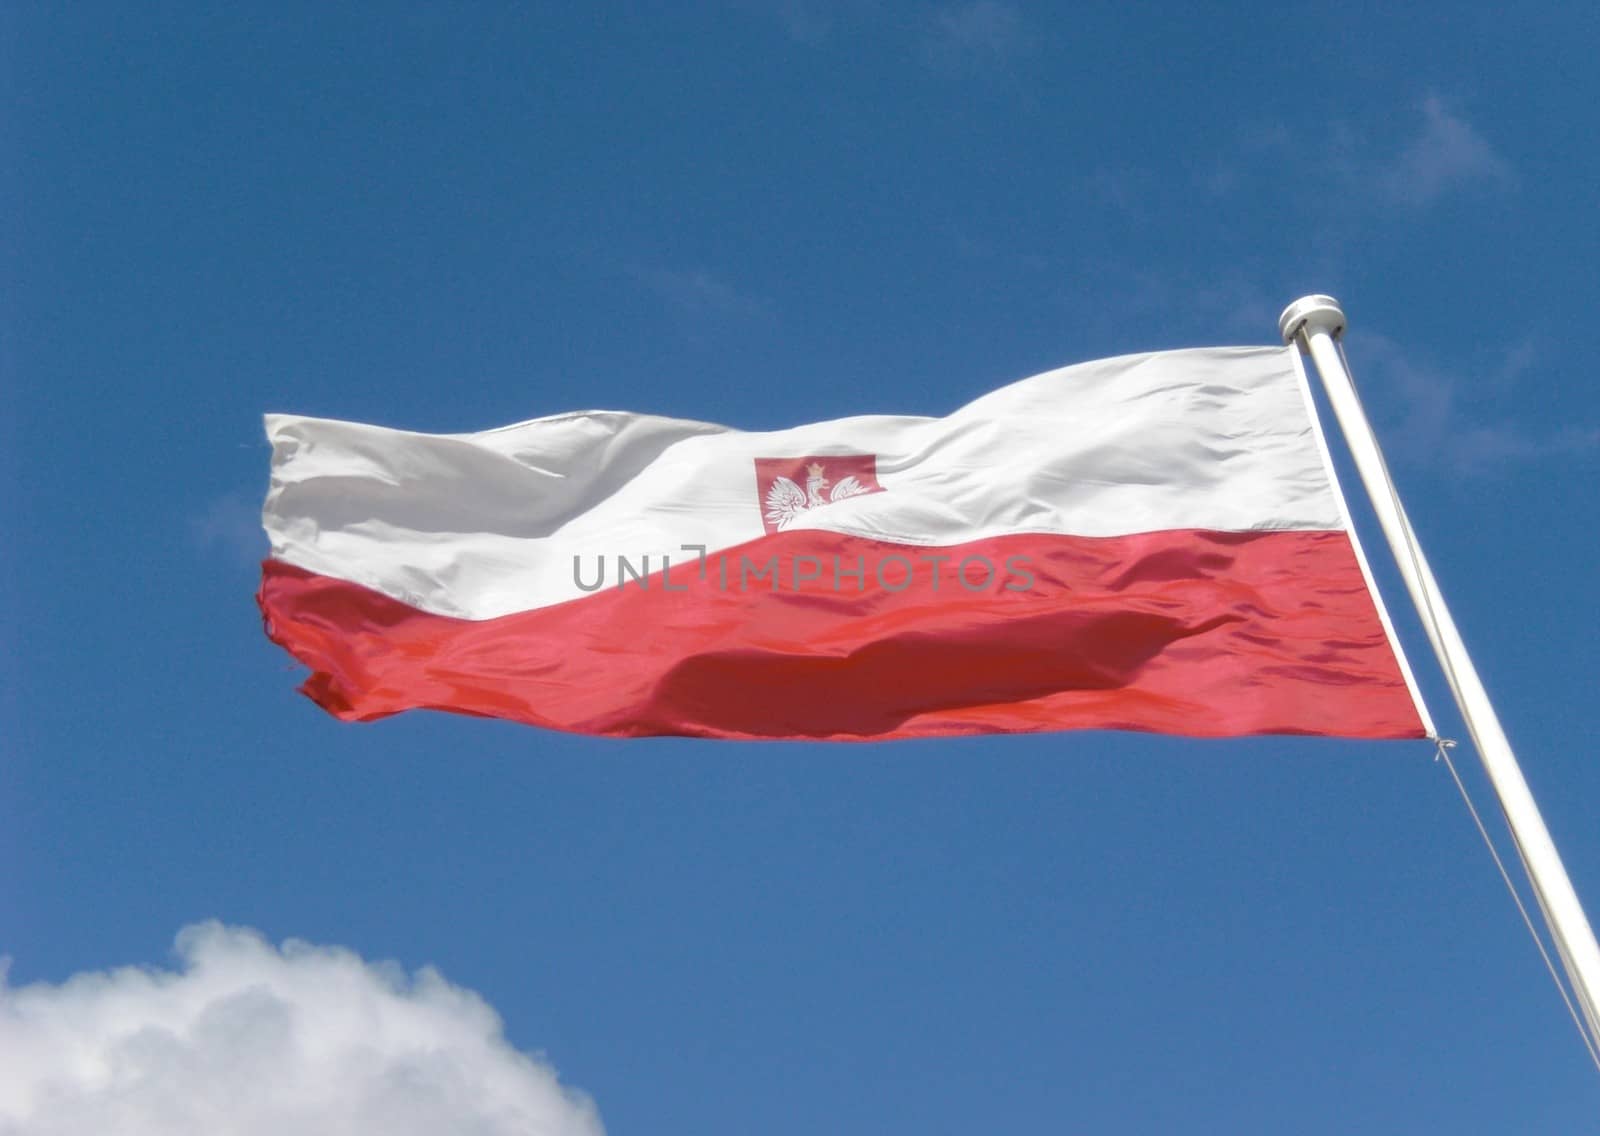 Poland Flag with Emblem on Flagstaff by fstockluk